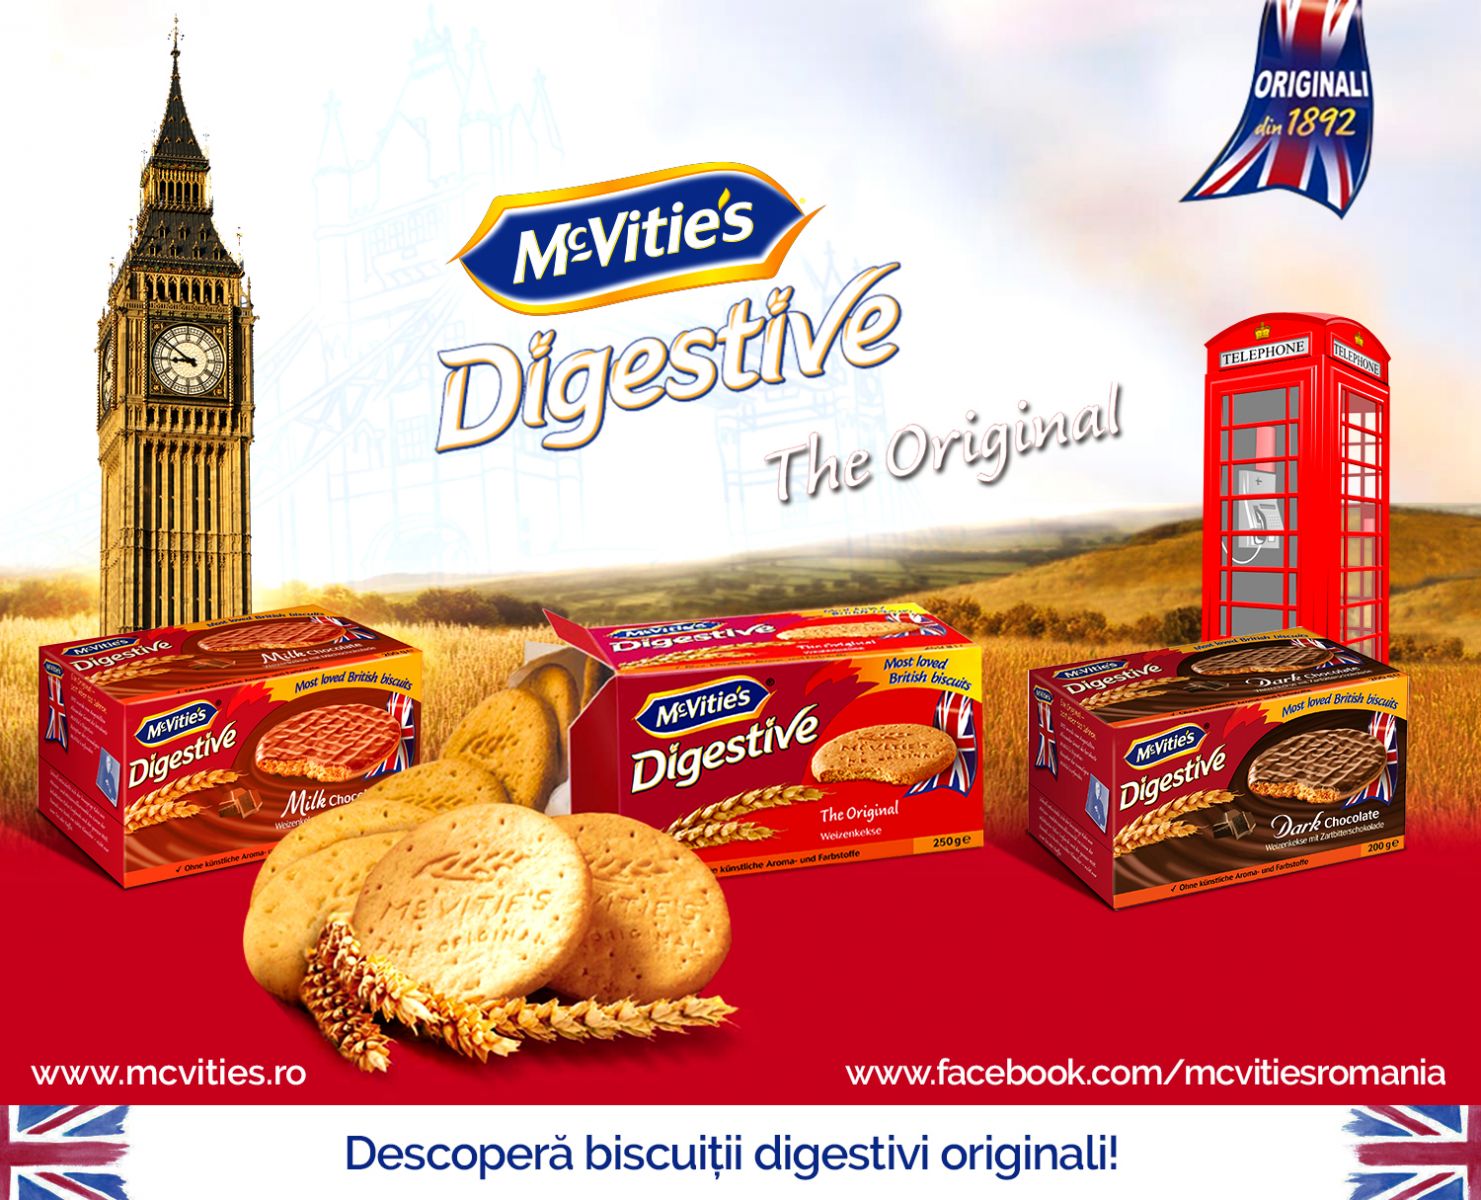 McVitie’s te provoaca sa descoperi biscuitul digestiv Original